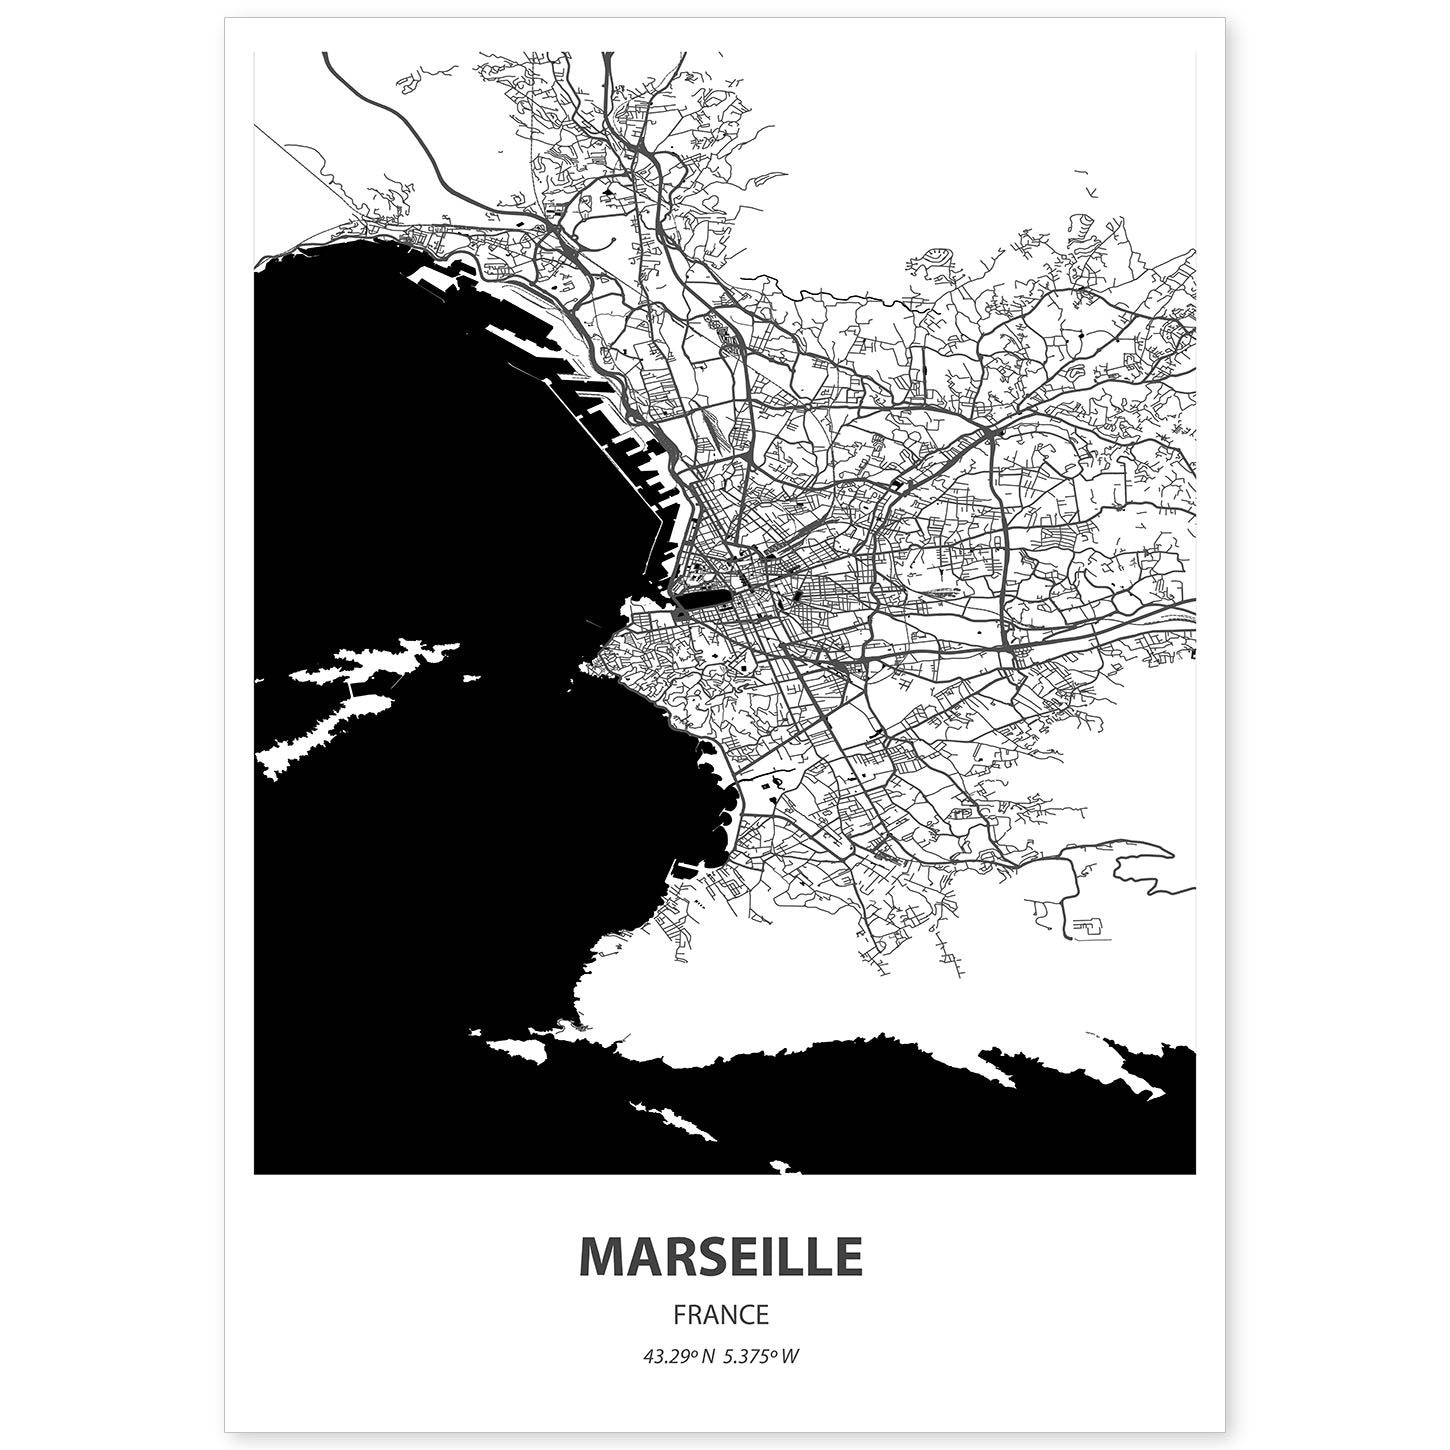 Poster con mapa de Marselle - Francia. Láminas de ciudades de Francia con mares y ríos en color negro.-Artwork-Nacnic-A4-Sin marco-Nacnic Estudio SL